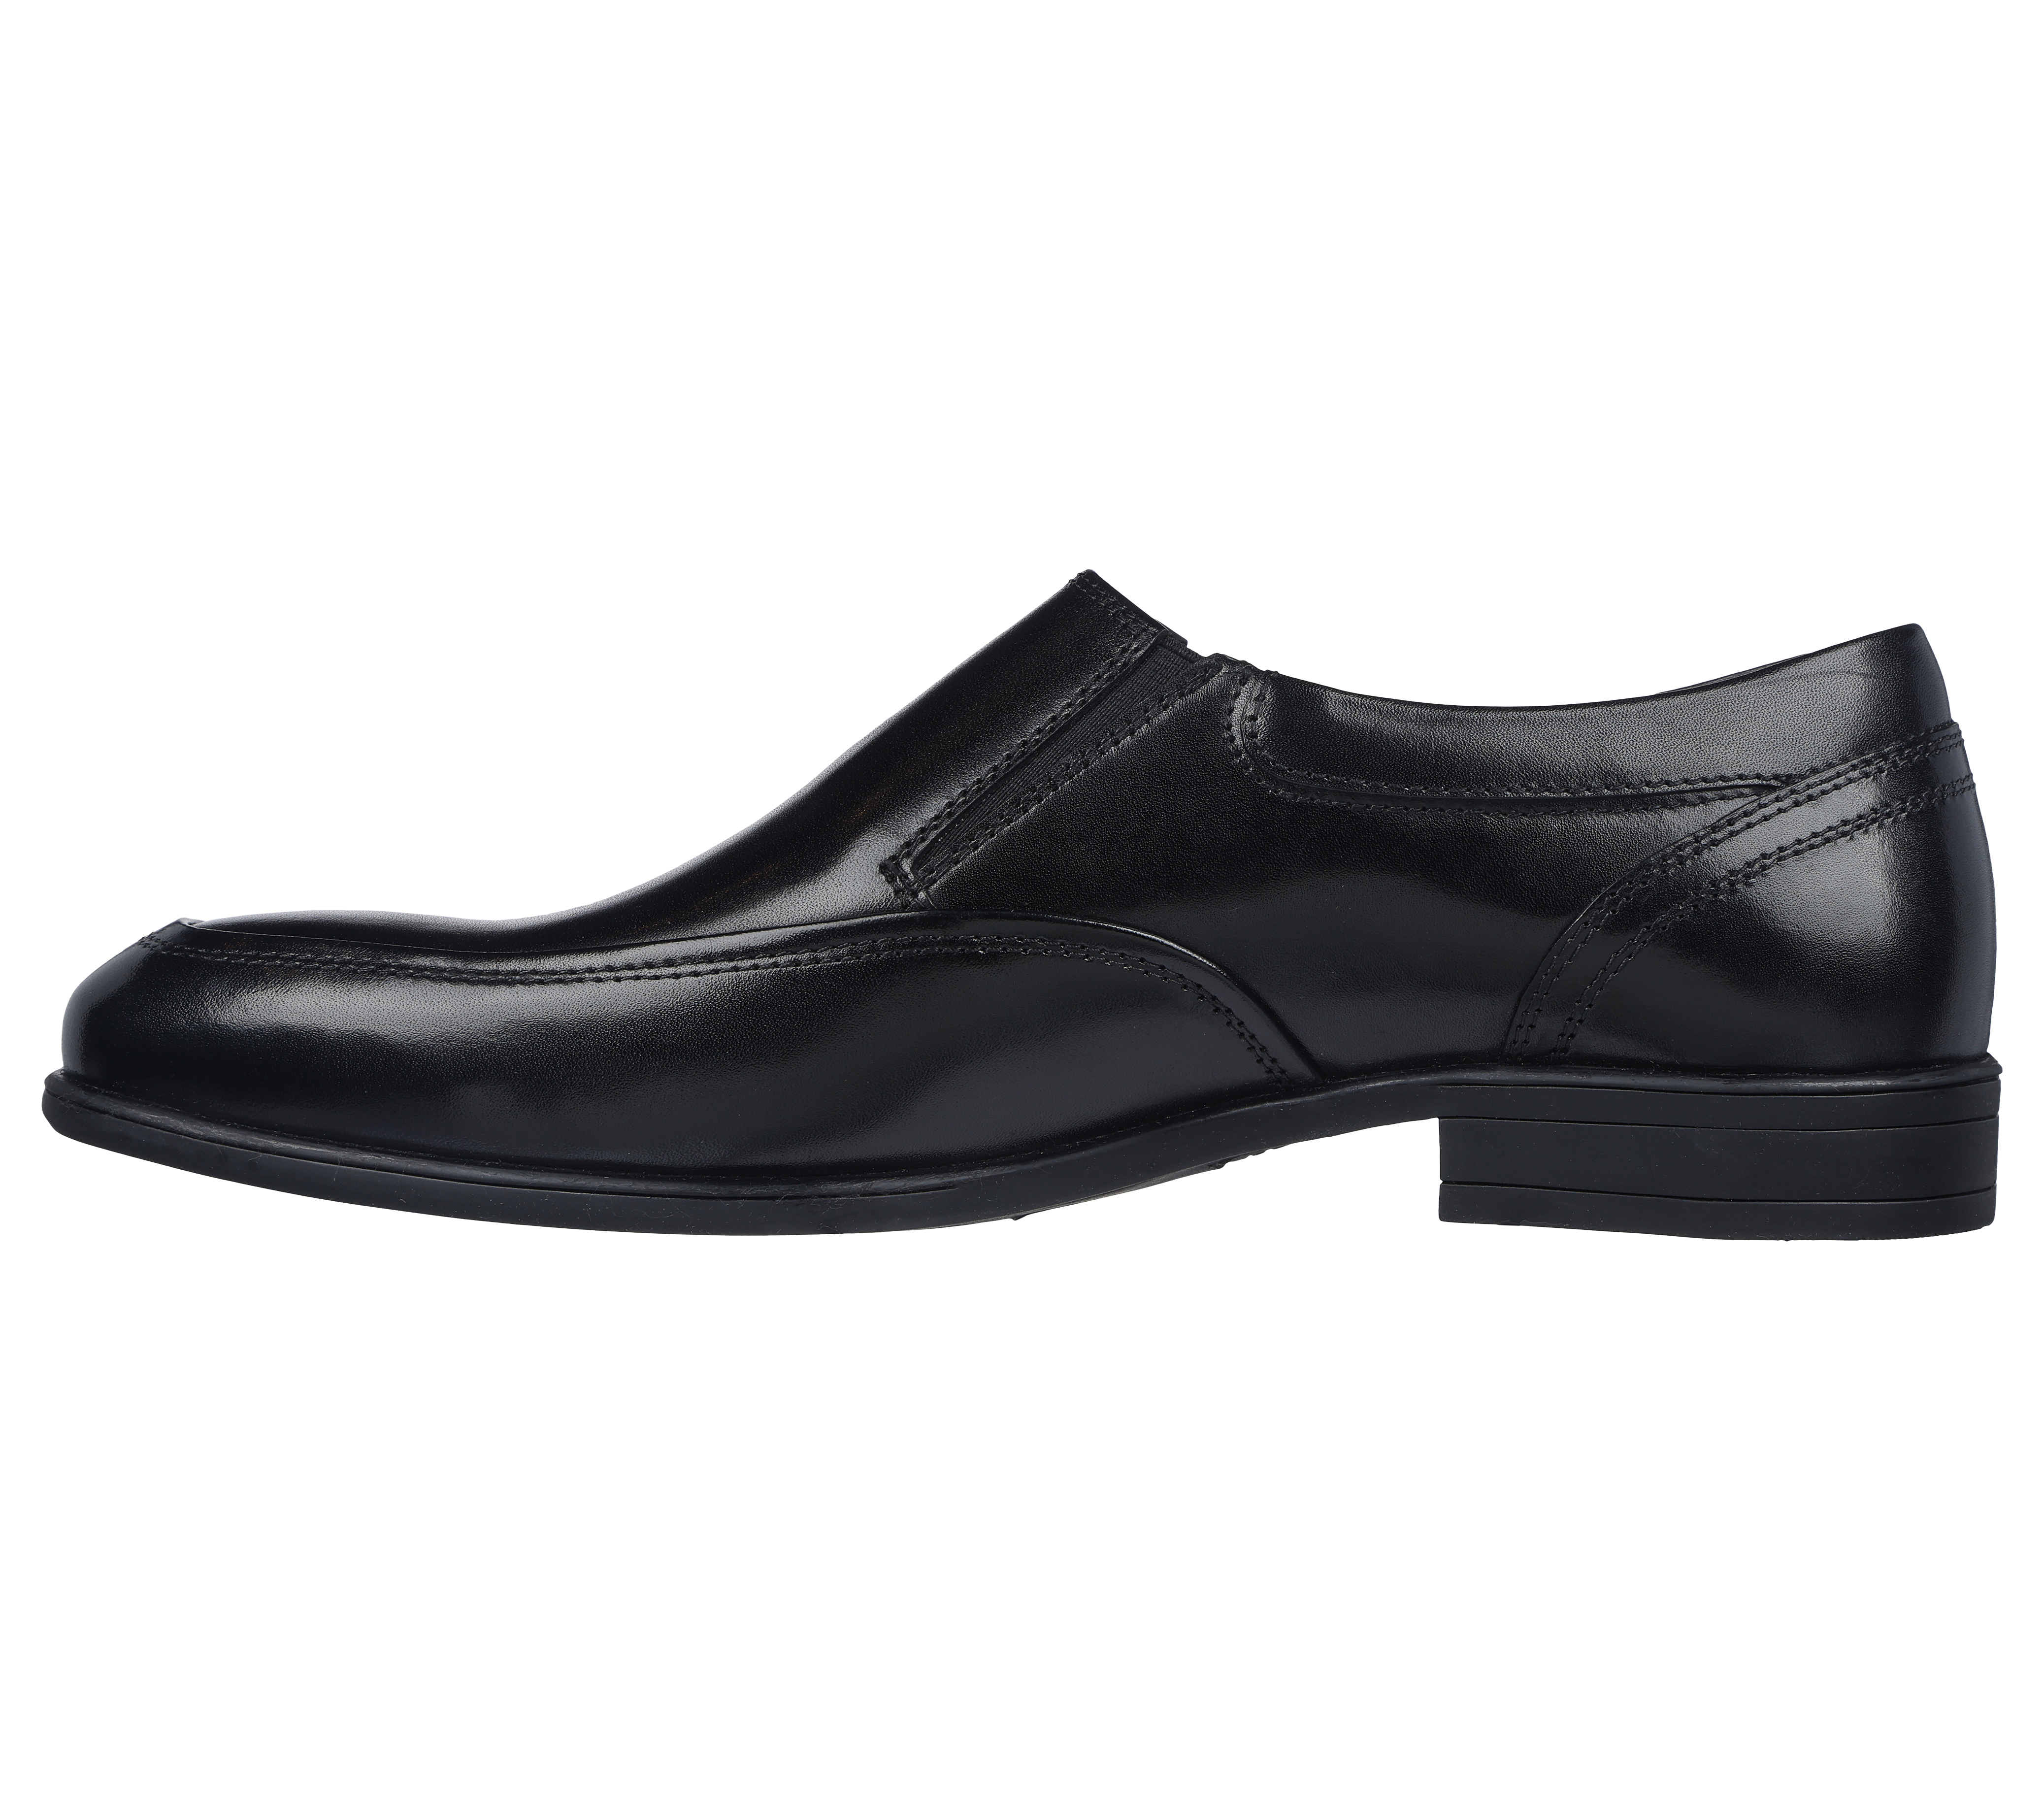 sketchers dress shoes for men